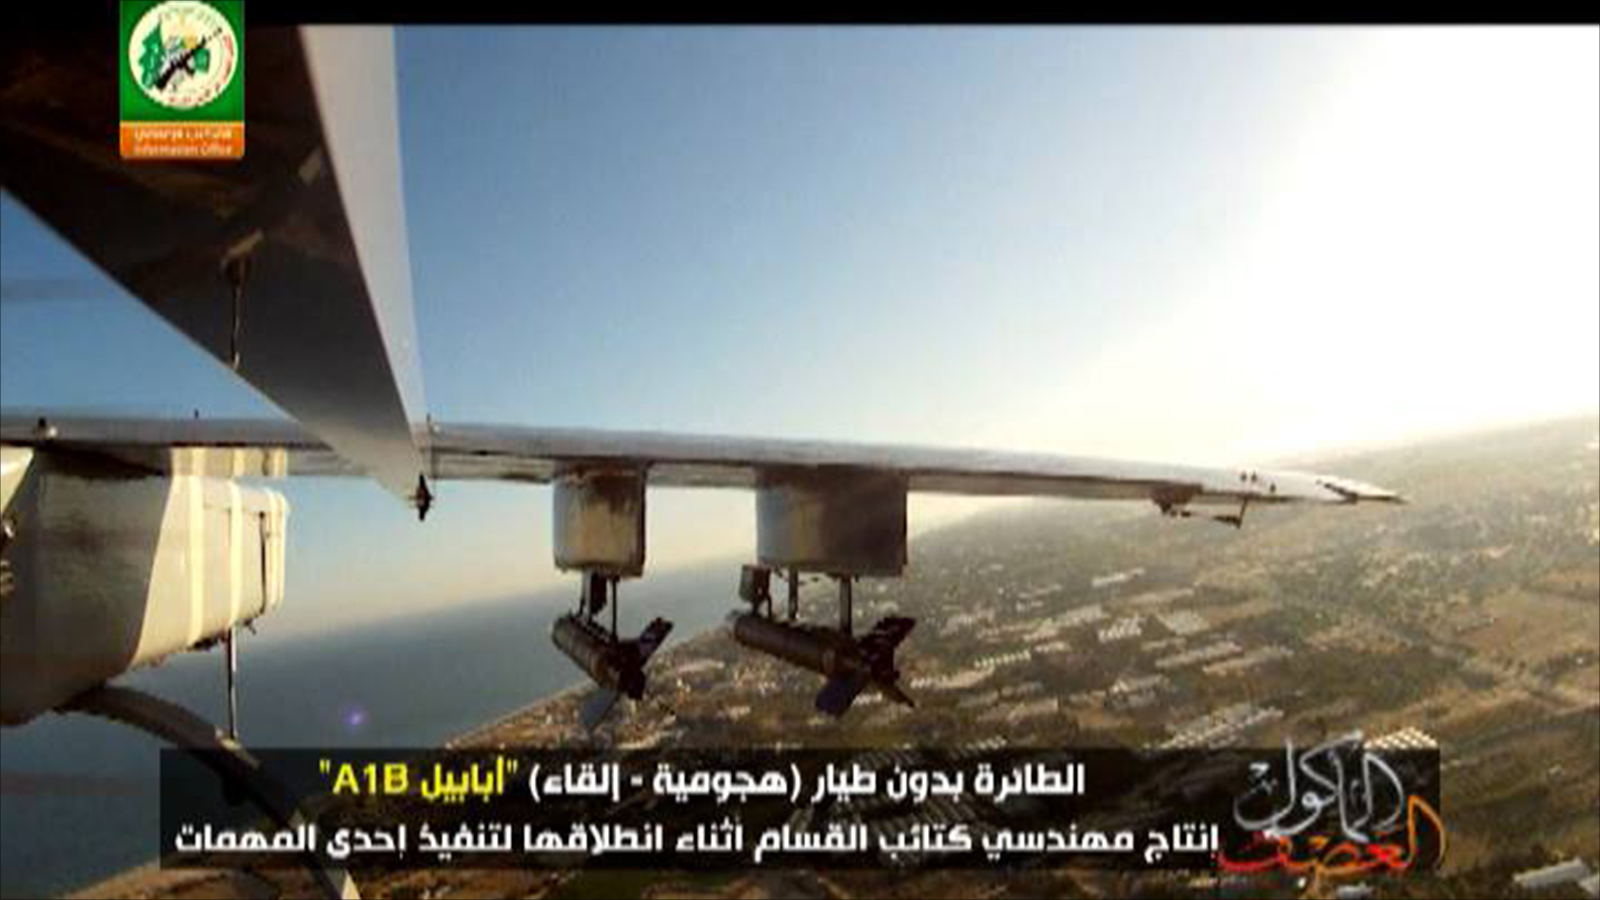  طائرة أبابيل التي أطلقتها كتائب القسام ونفذت مهمتها في العمق الإسرائليي (الجزيرة)